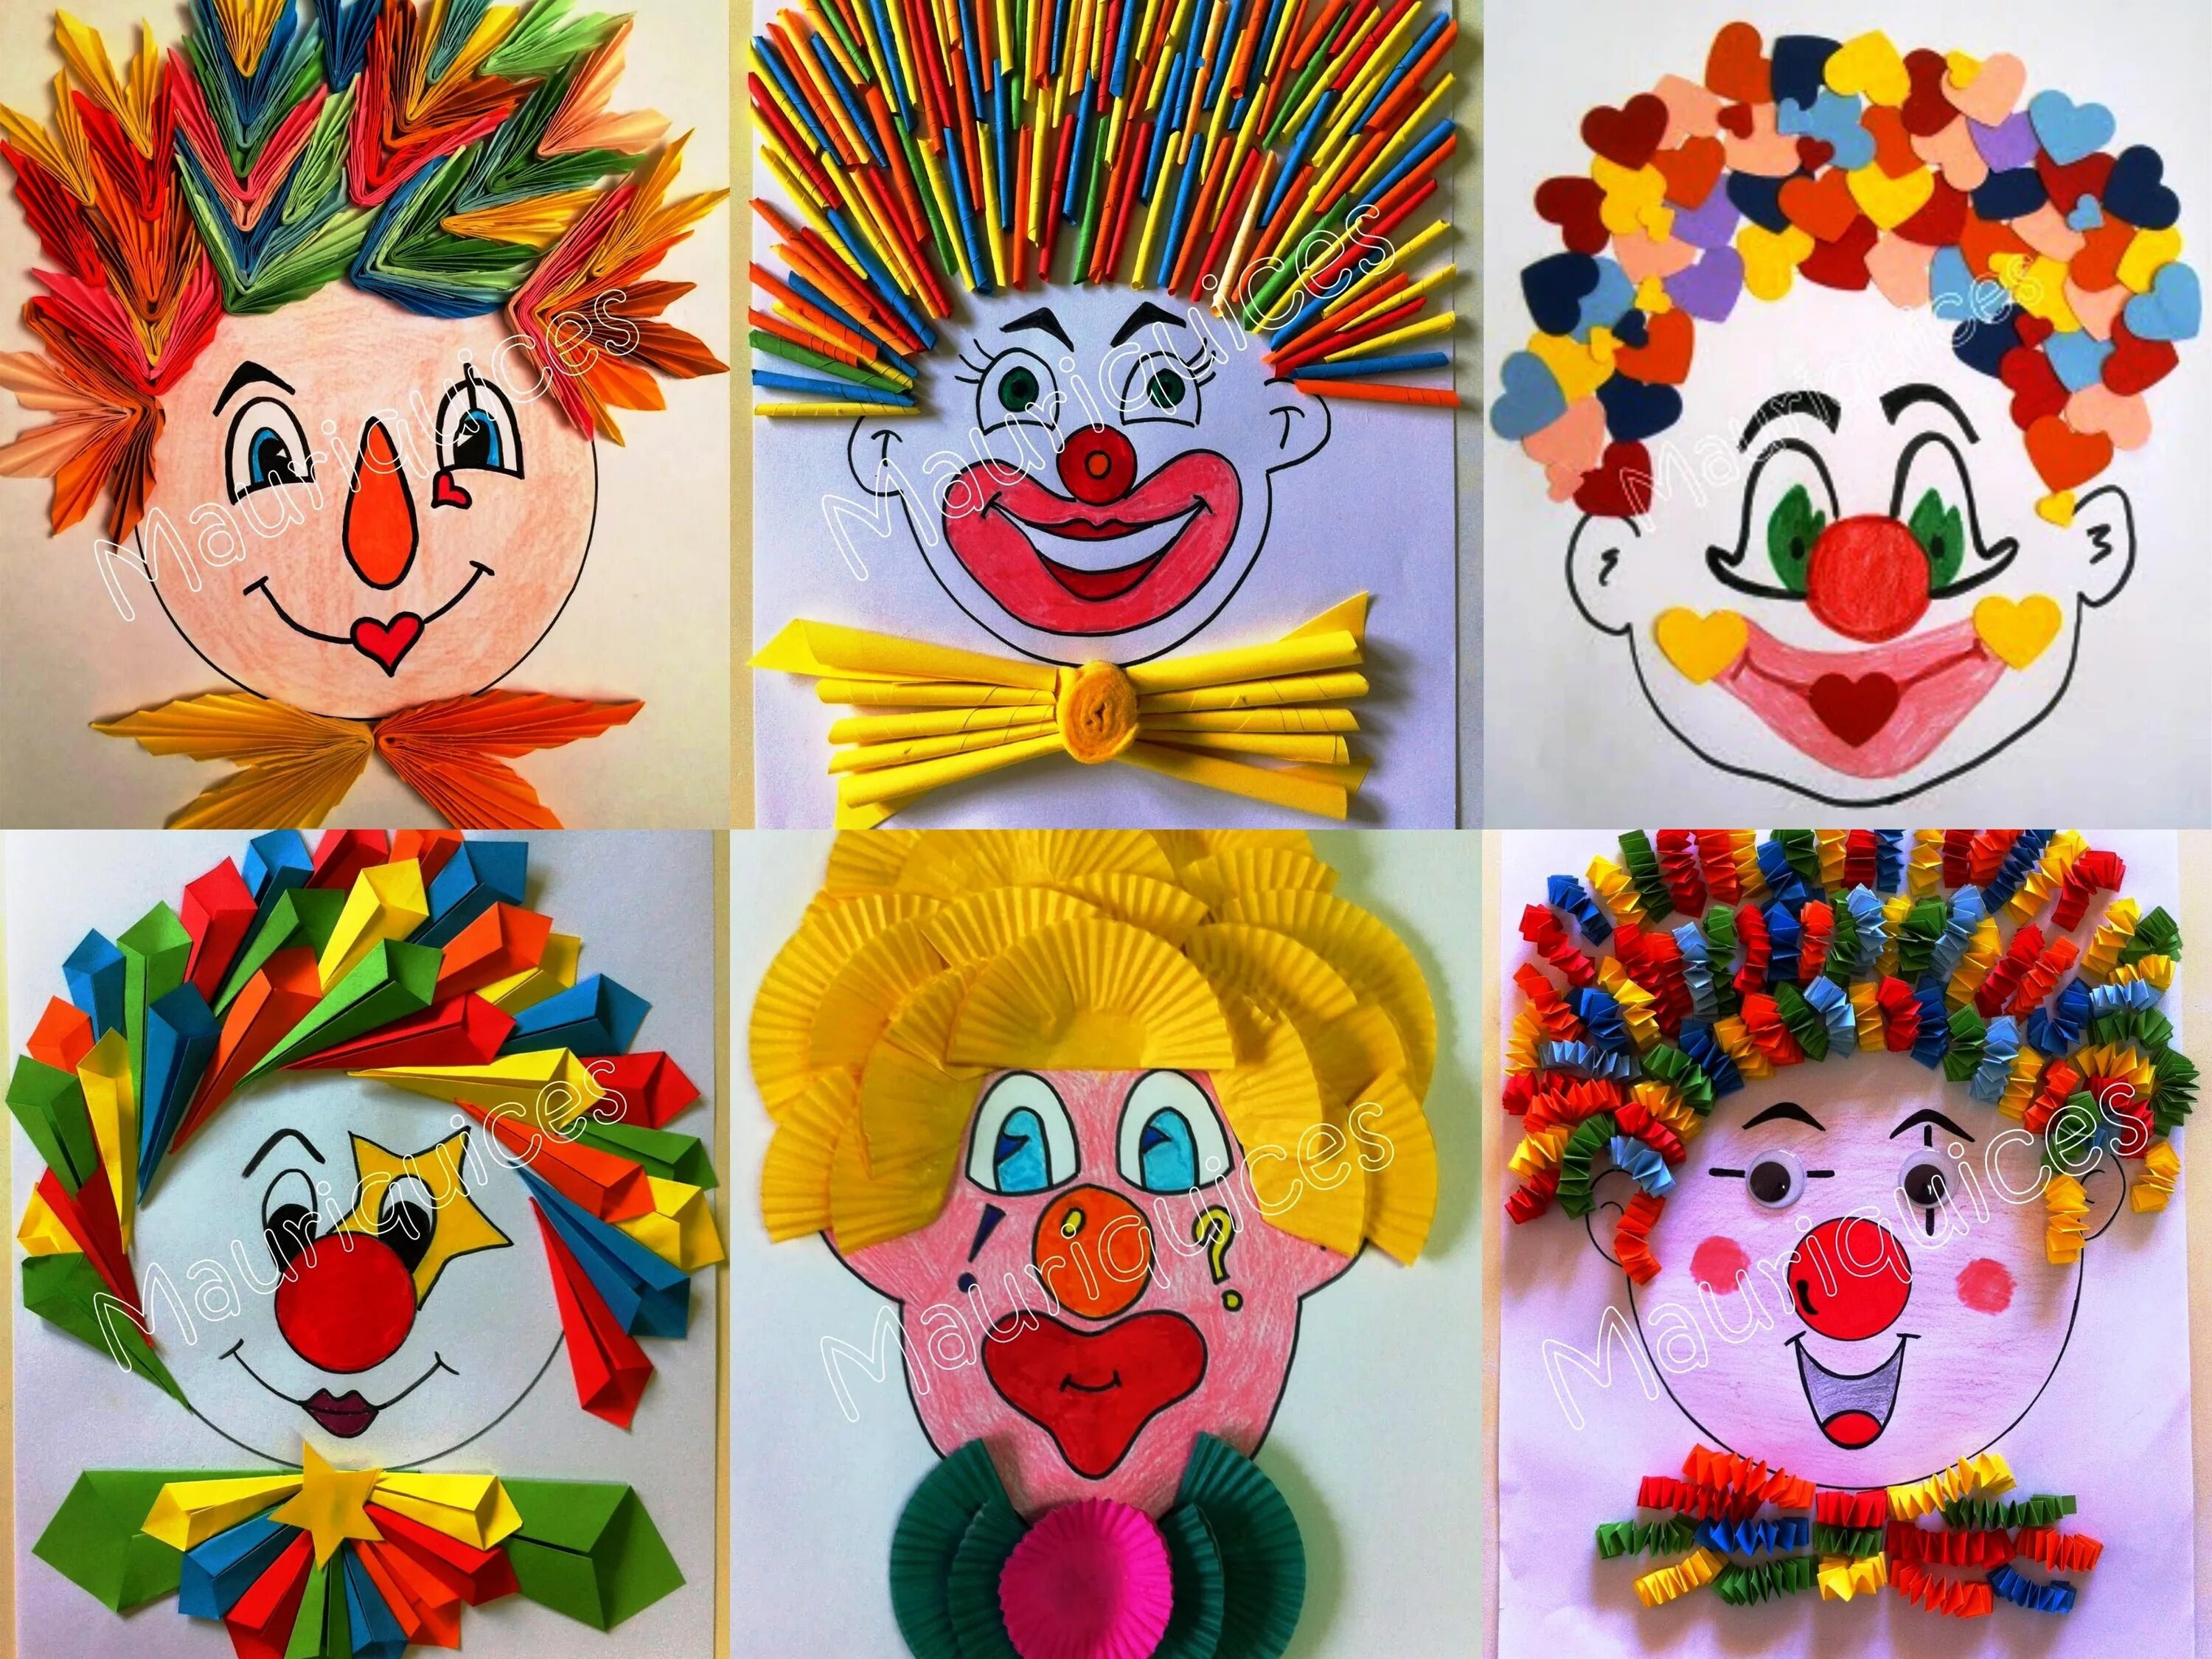 Поделки на день смеха в детском саду. Поделка клоун из цветной бумаги. Аппликация в детском саду. Поддлека клоун. Весёлая аппликация "клоун".